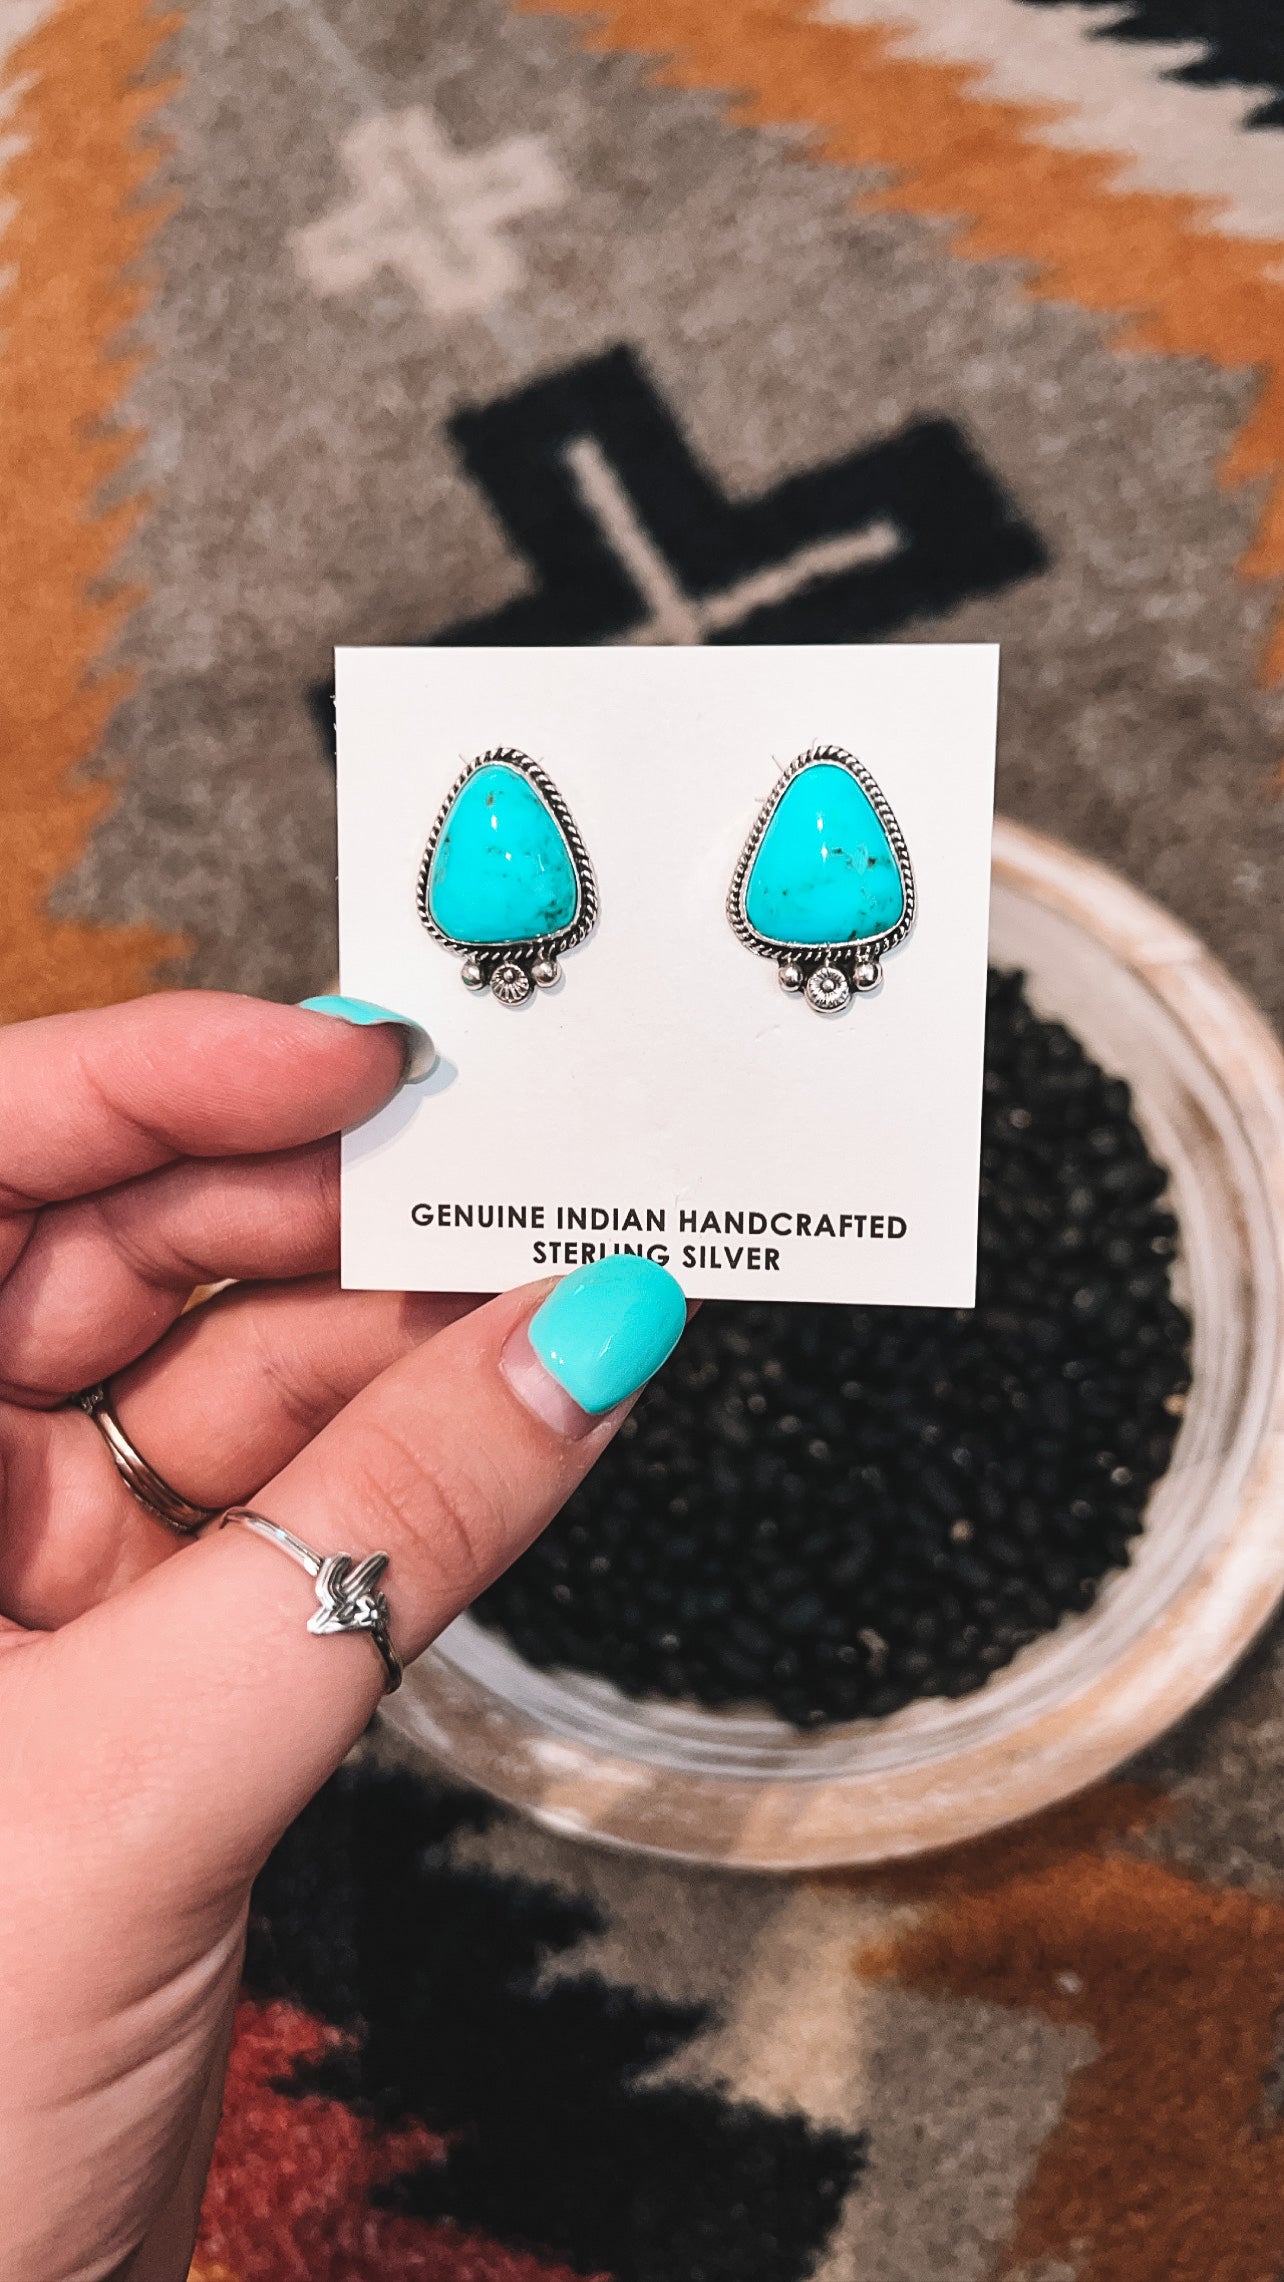 Dreamy turquoise earrings